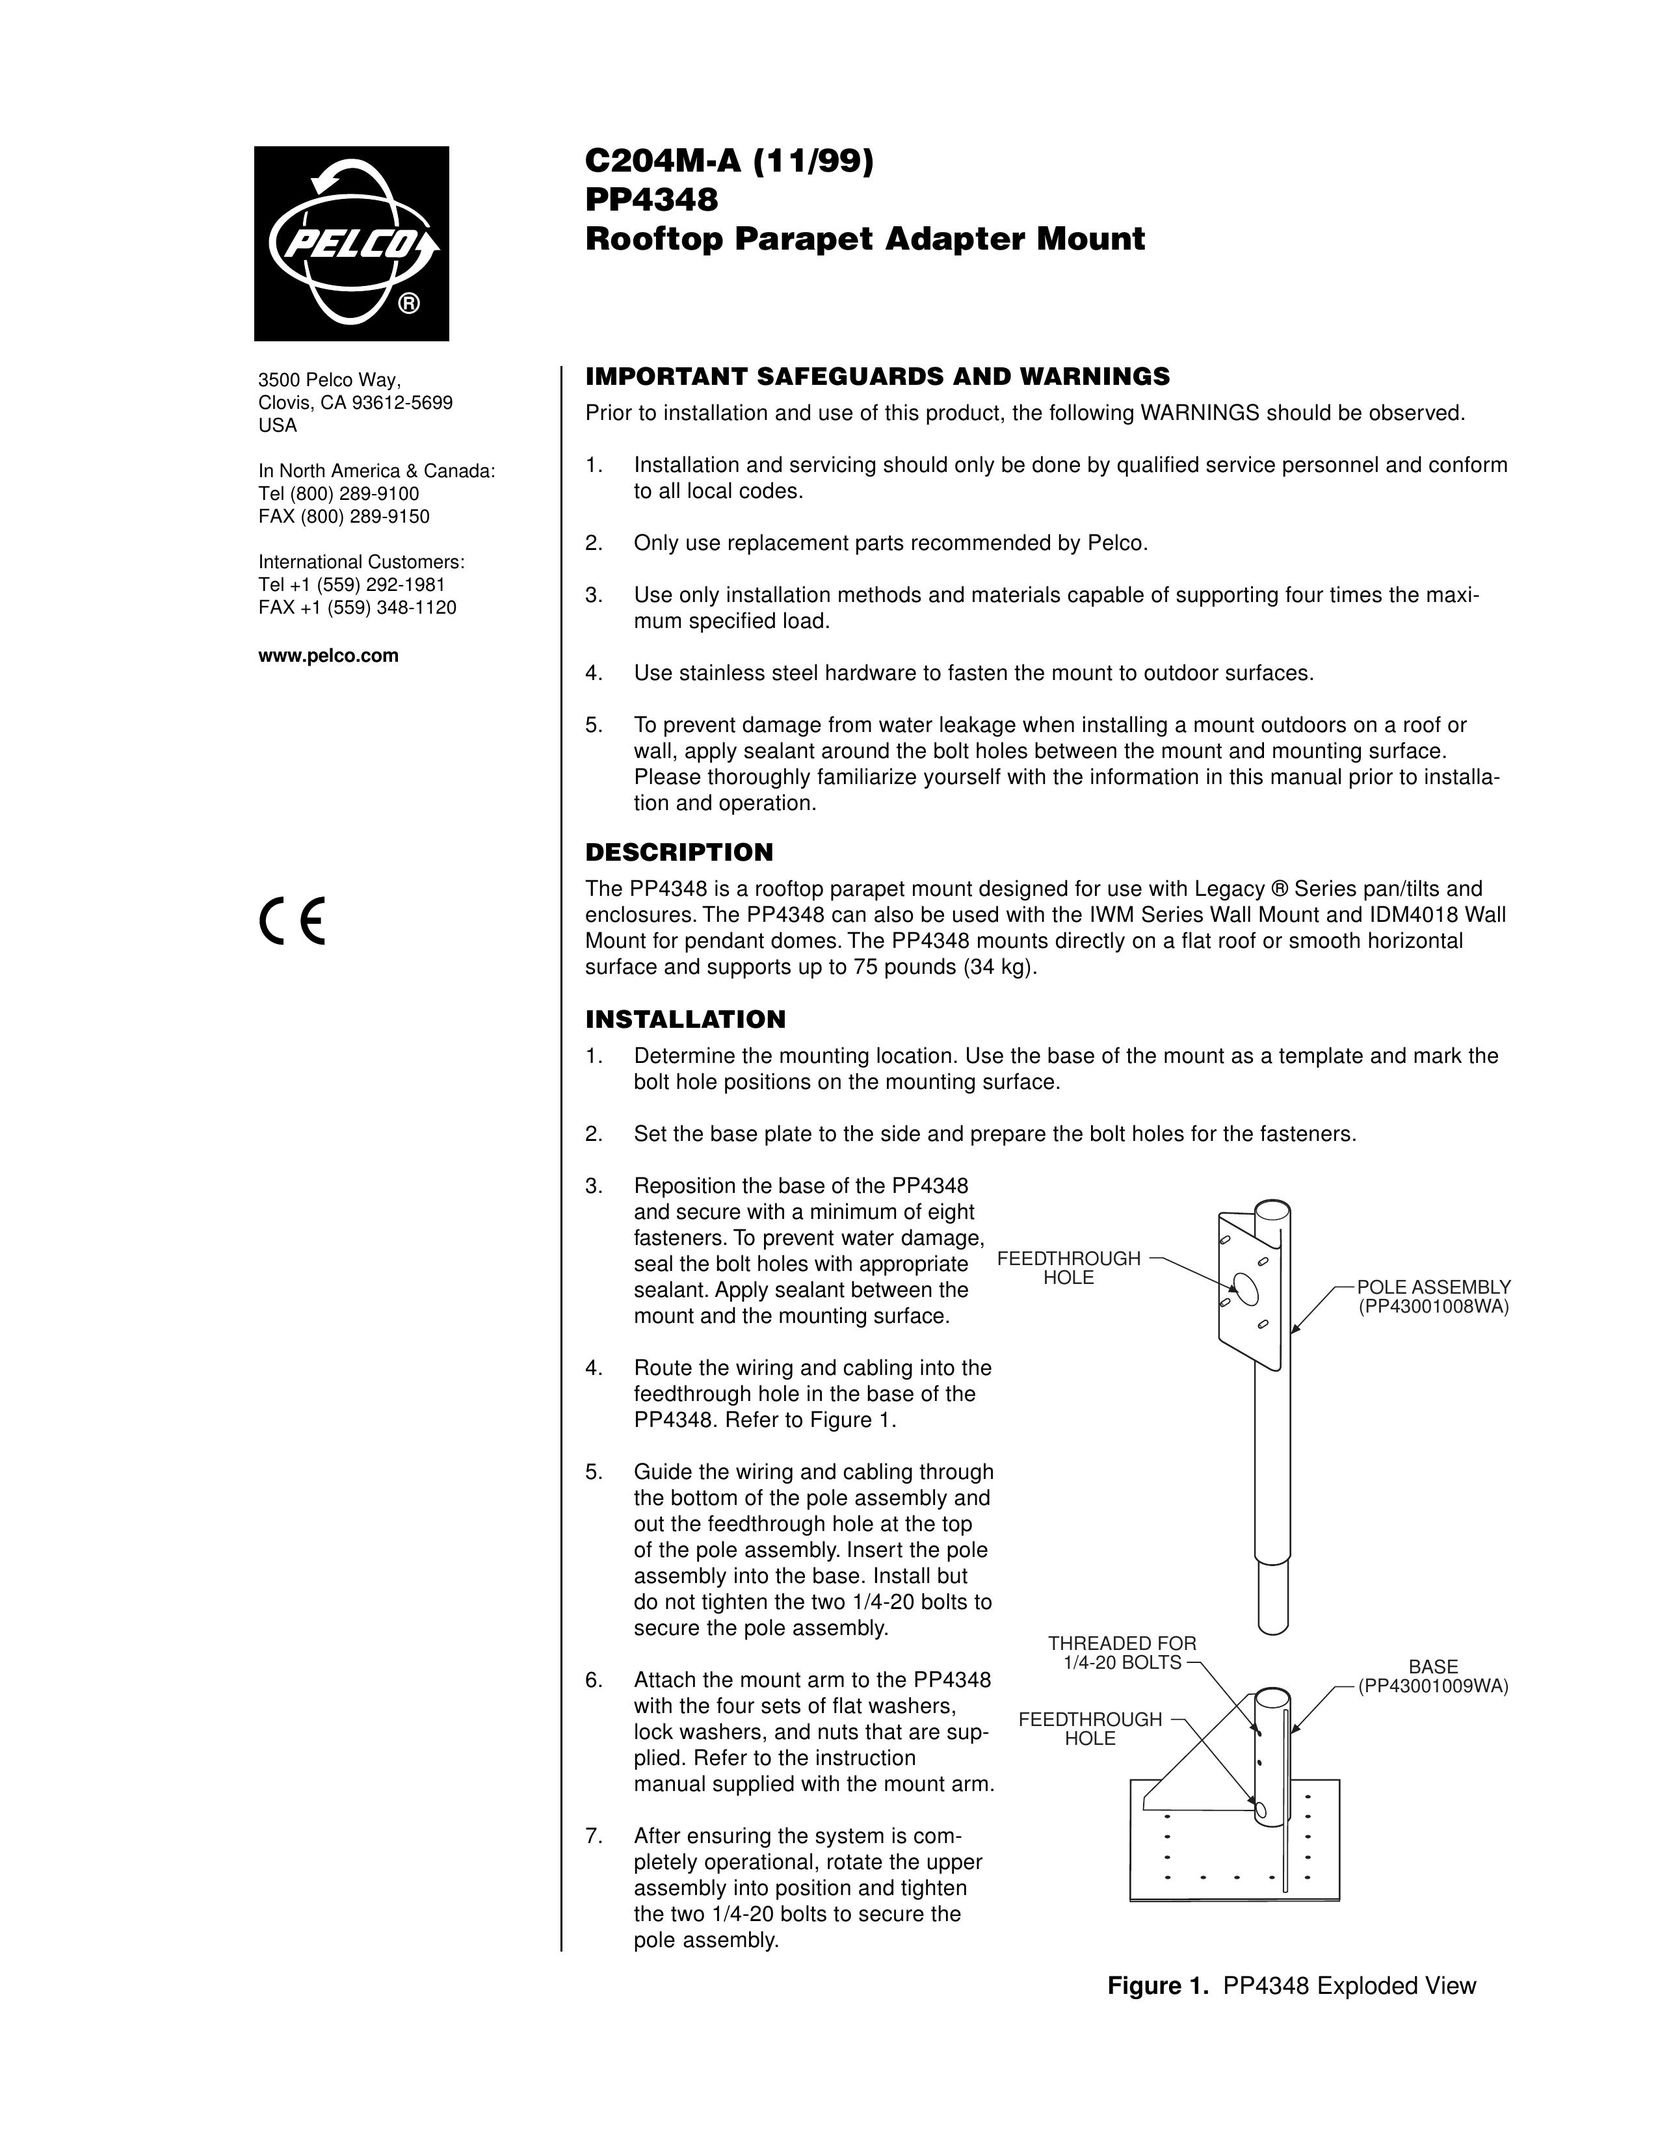 Pelco PP4348 Nail Gun User Manual